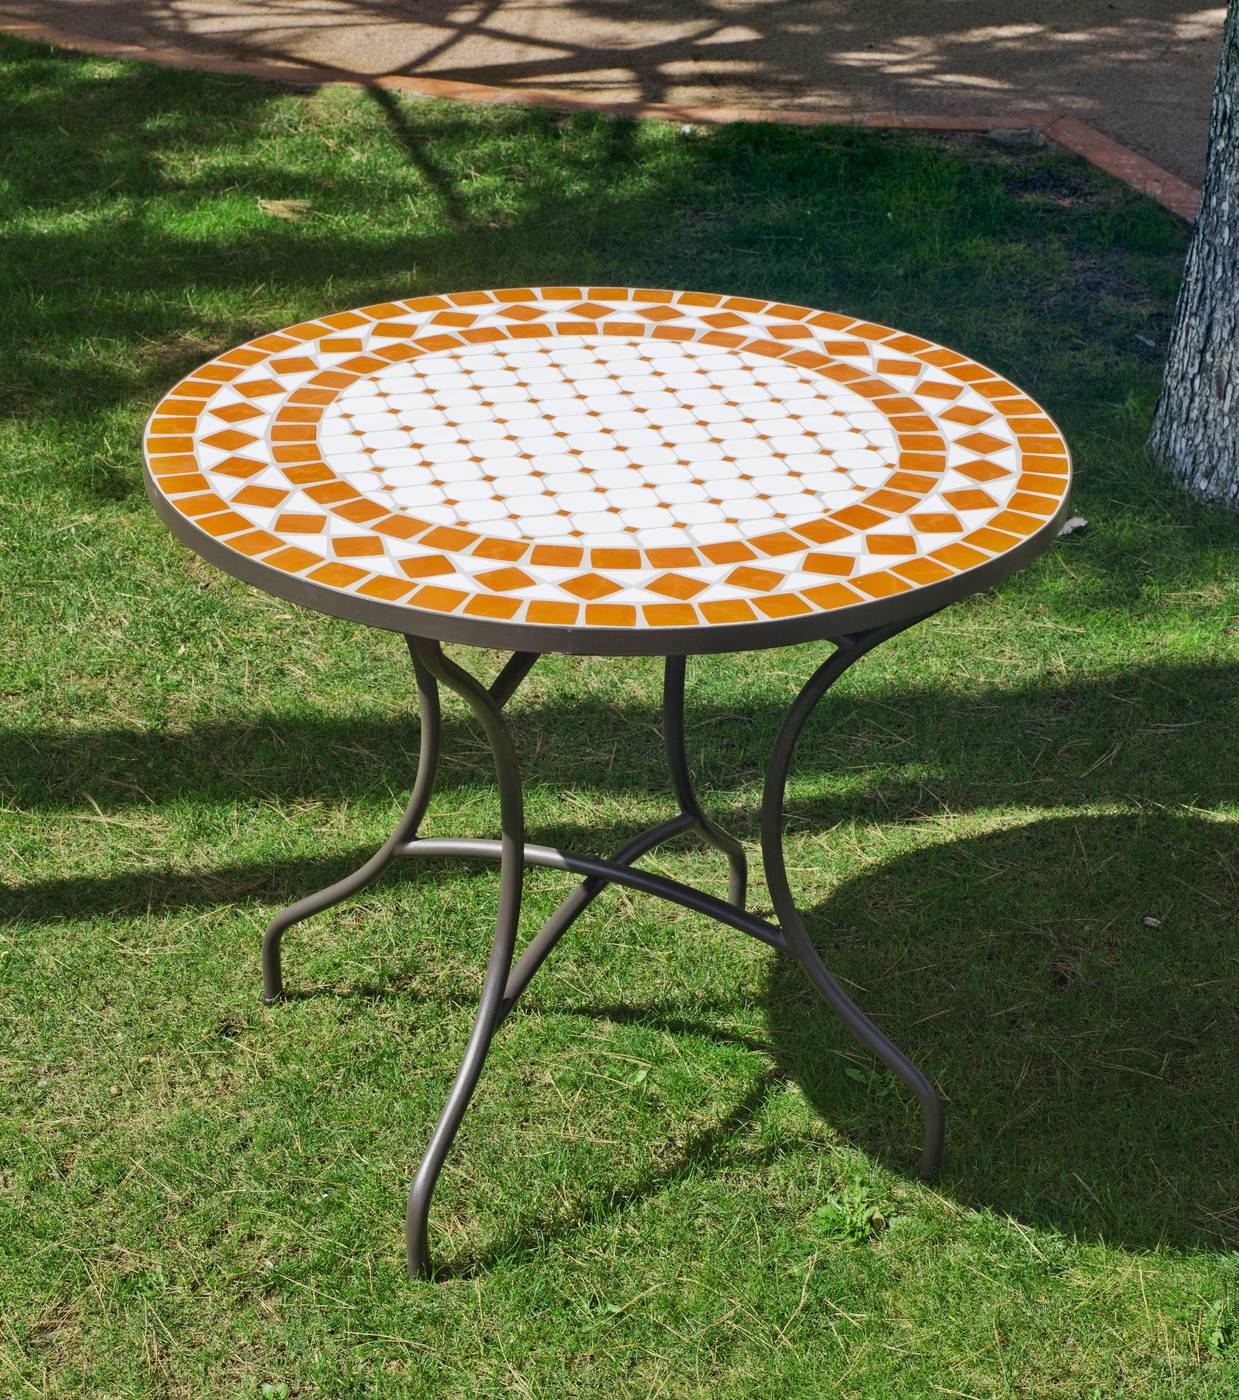 Set Madera Berna-Melrose - Conjunto de madera y acero forjado: 1 mesa mosaico 90Ø + 4 sillas plegables de madera + 4 cojines completos